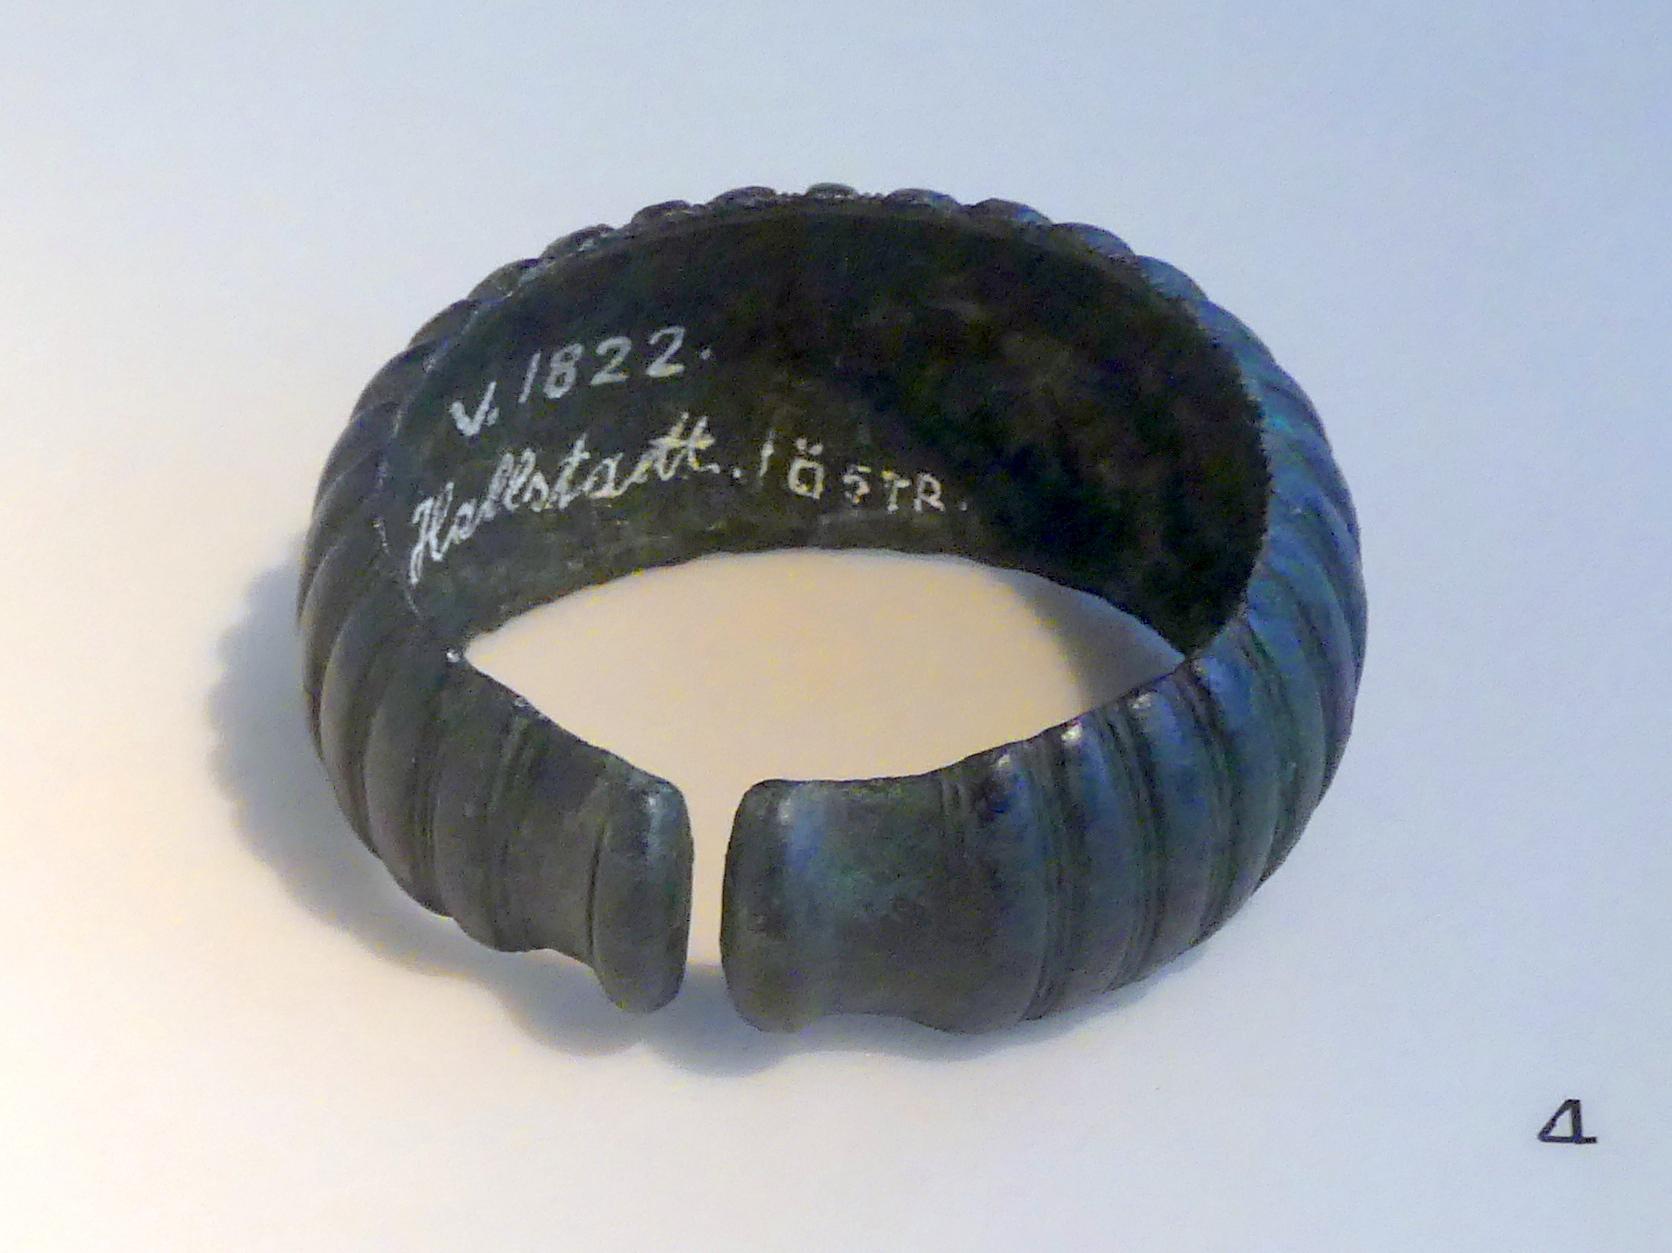 Melonenarmband, Hallstattzeit, 700 - 200 v. Chr., 700 - 600 v. Chr.